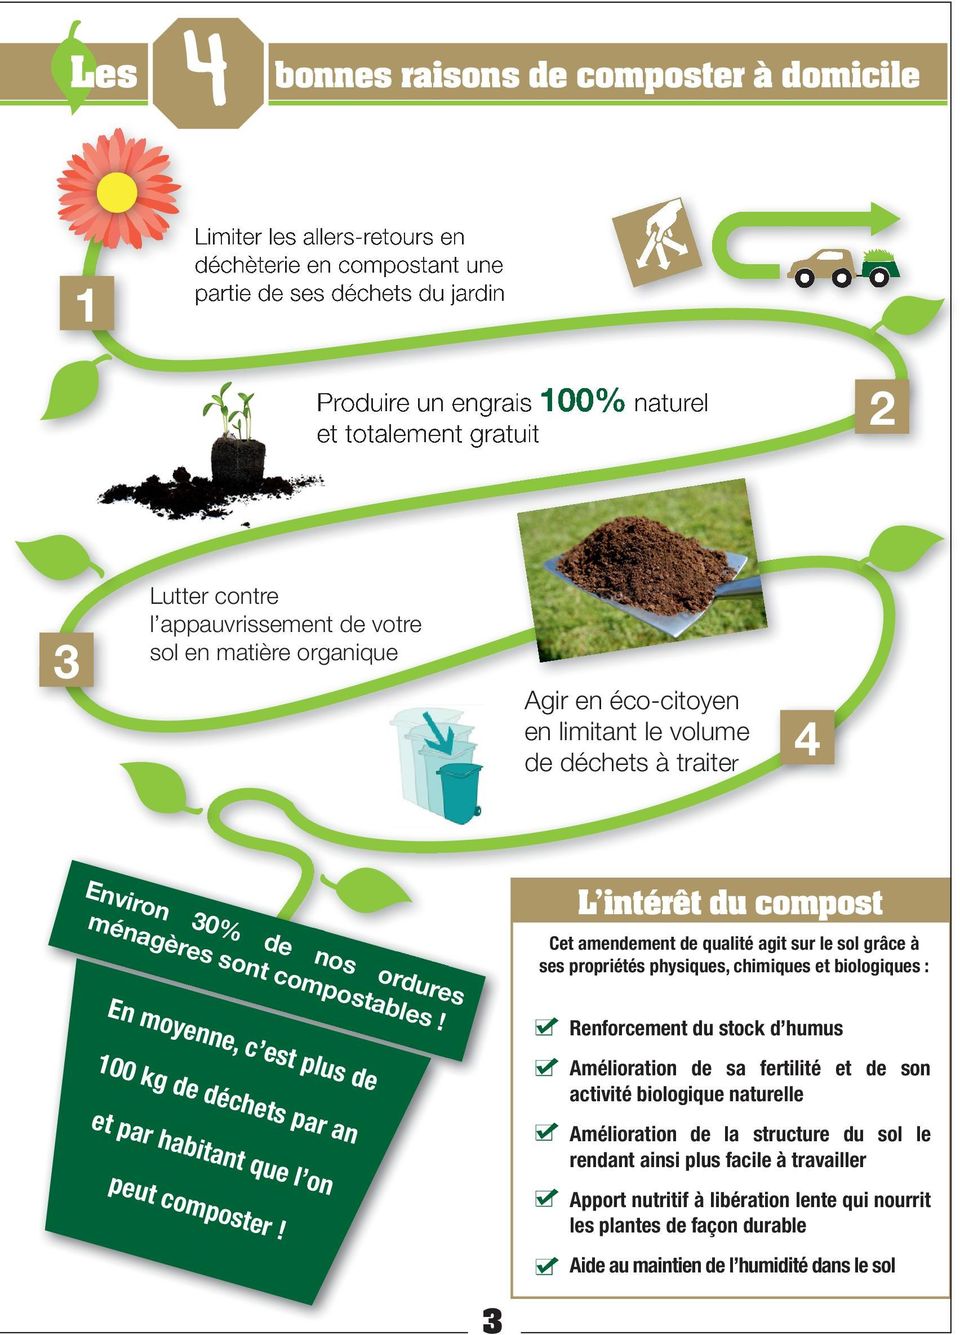 L intérêt du compost et amendement de qualité agit sur le sol grâce à ses propriétés physiques, chimiques et biologiques : Renforcement du stock d humus En moyenne, c est plus de 100 kg de déchets